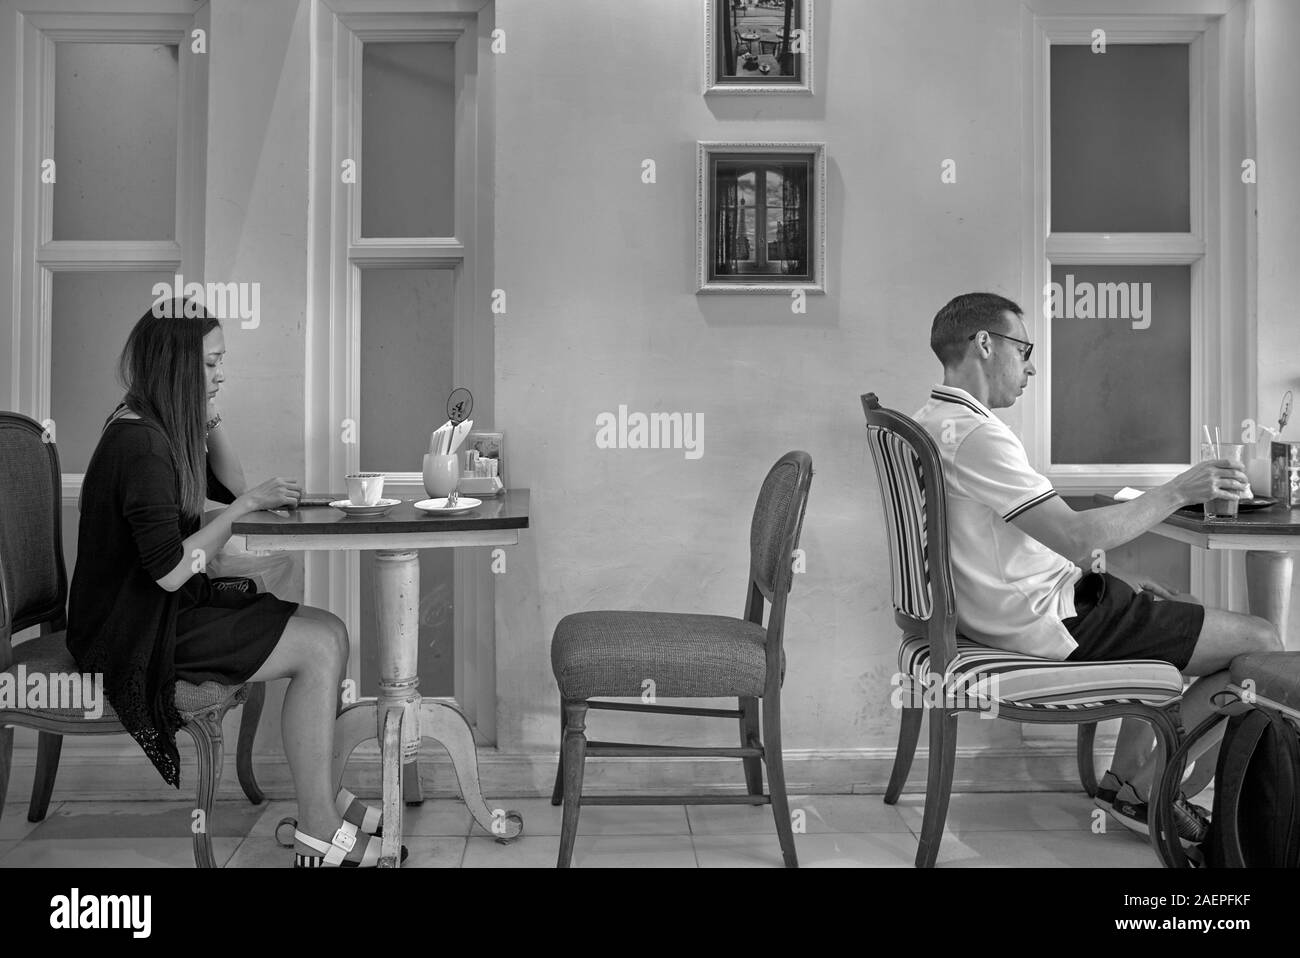 Concept simple. Deux personnes dans un restaurant assis seul. Étrangers Banque D'Images